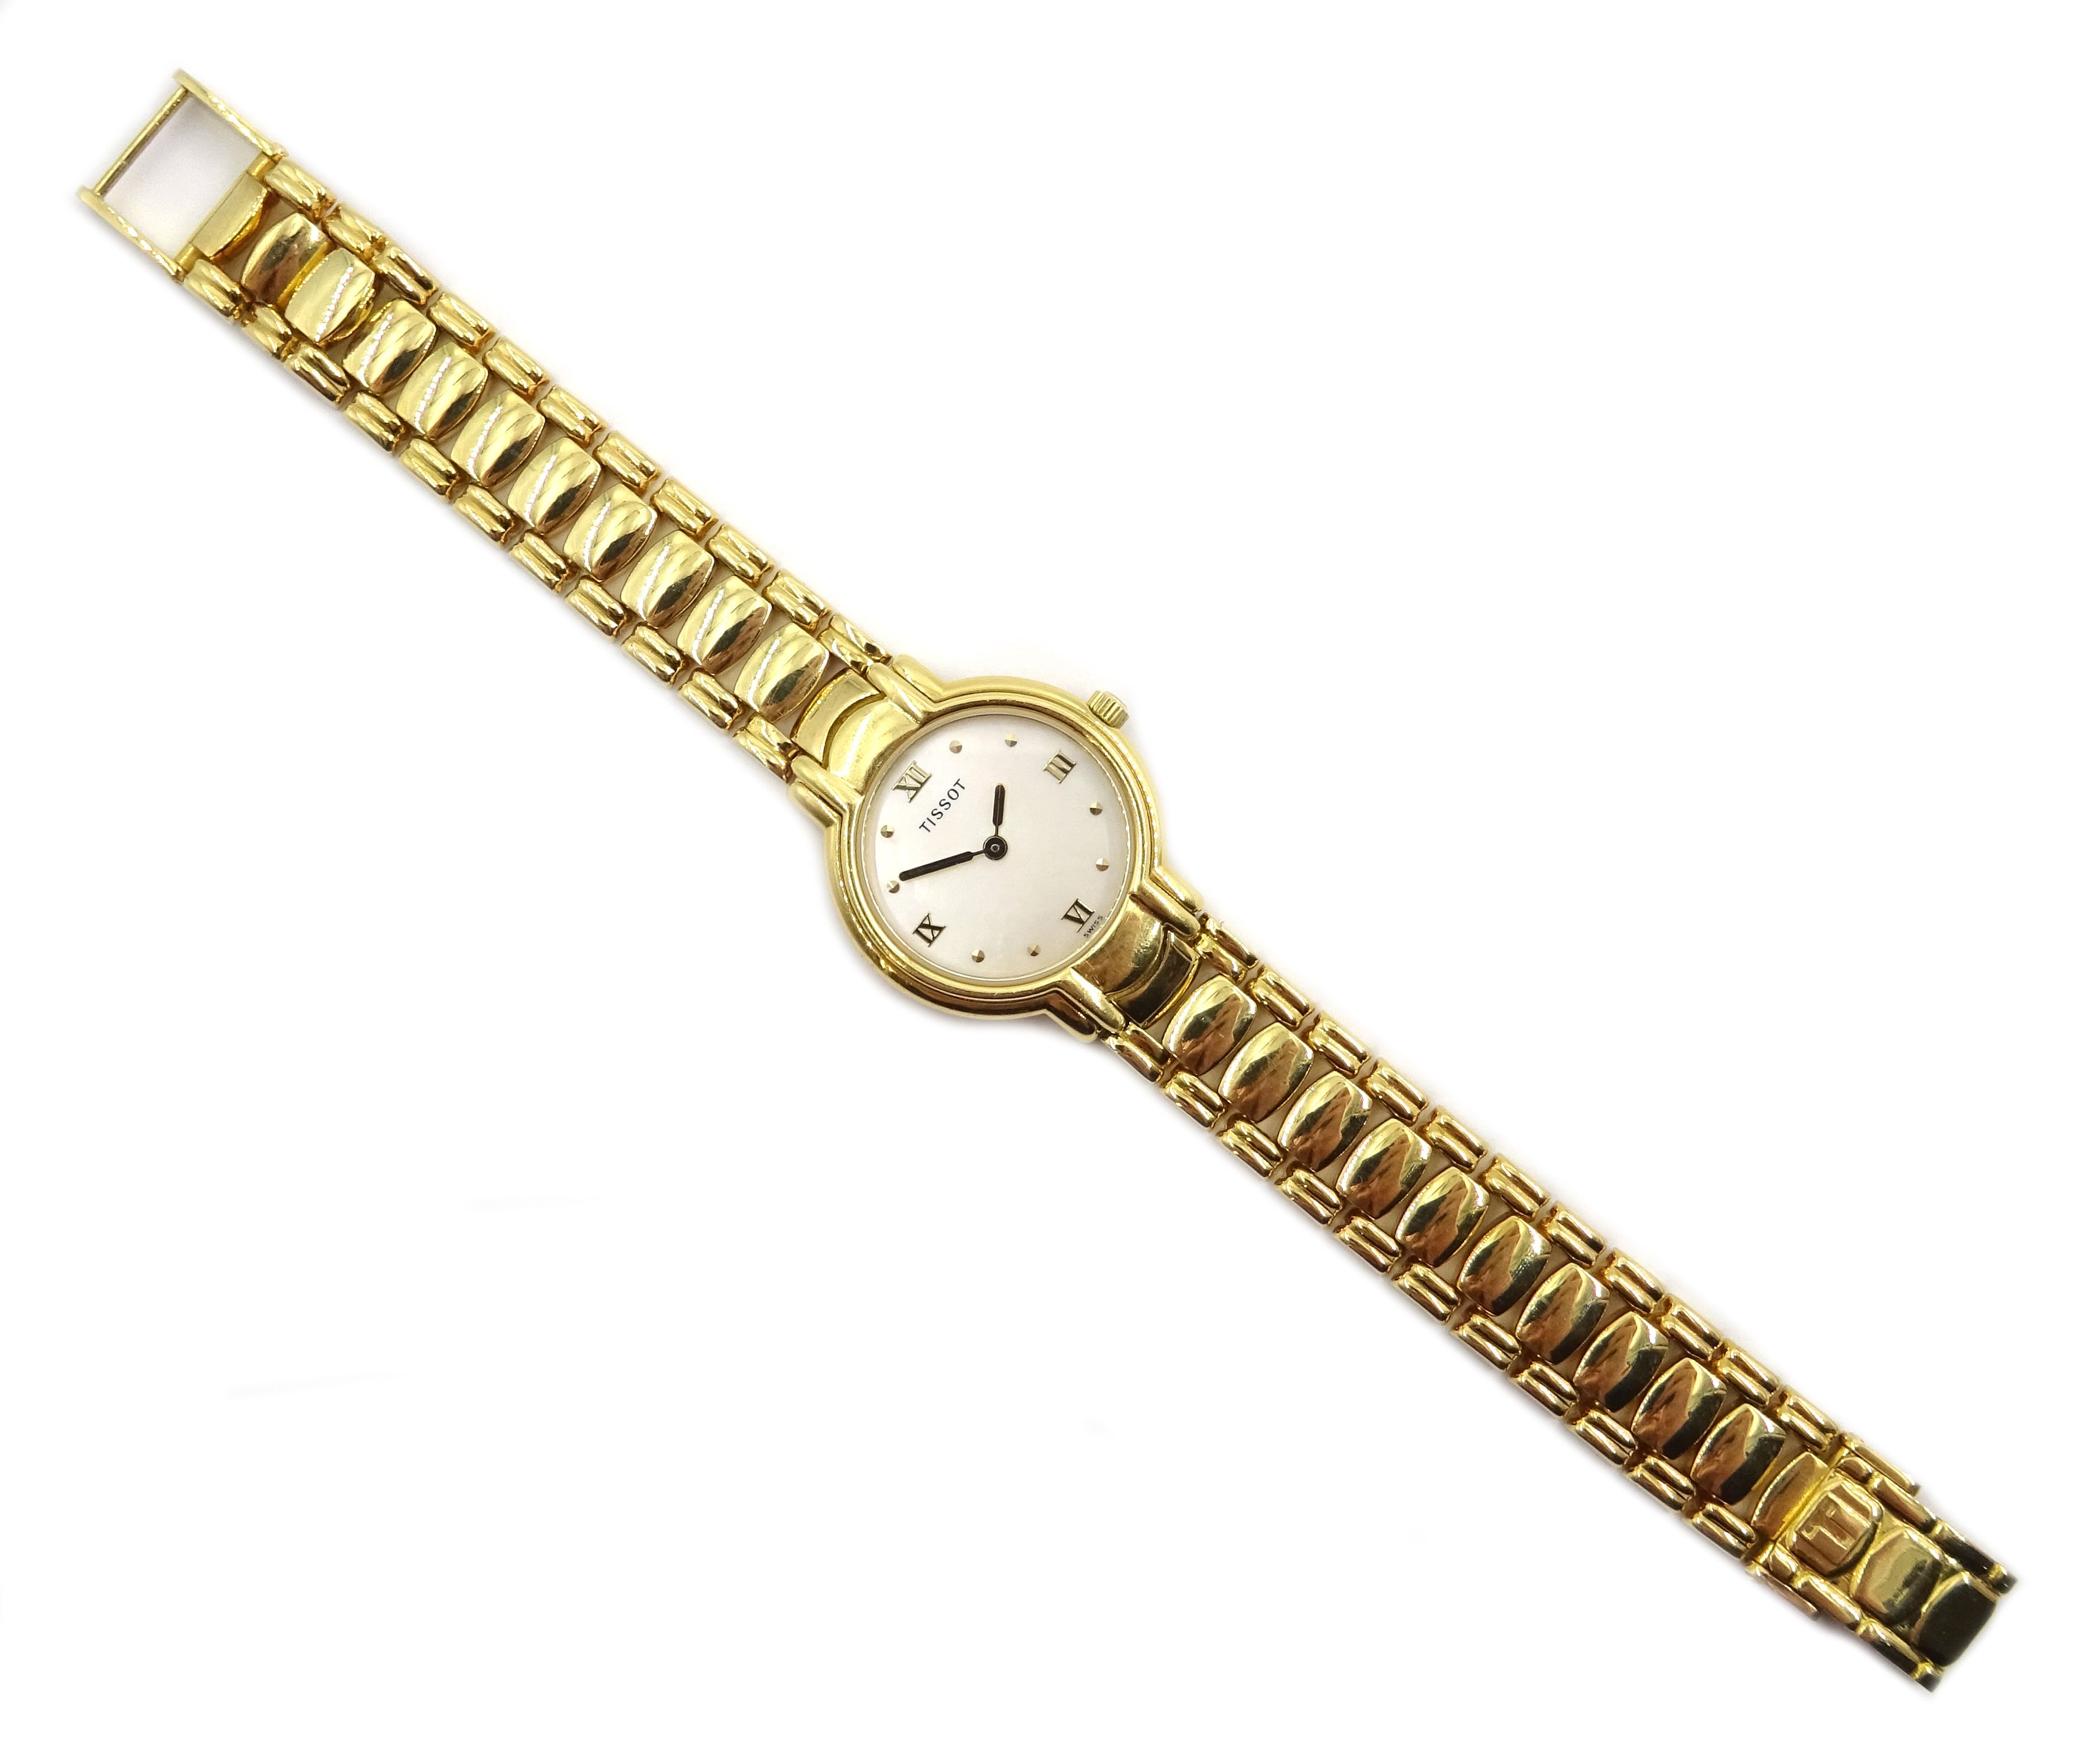 Tissot ladies's 18ct gold quartz bracelet wristwatch, mother of pearl dial No.T73.3.107. - Image 2 of 4